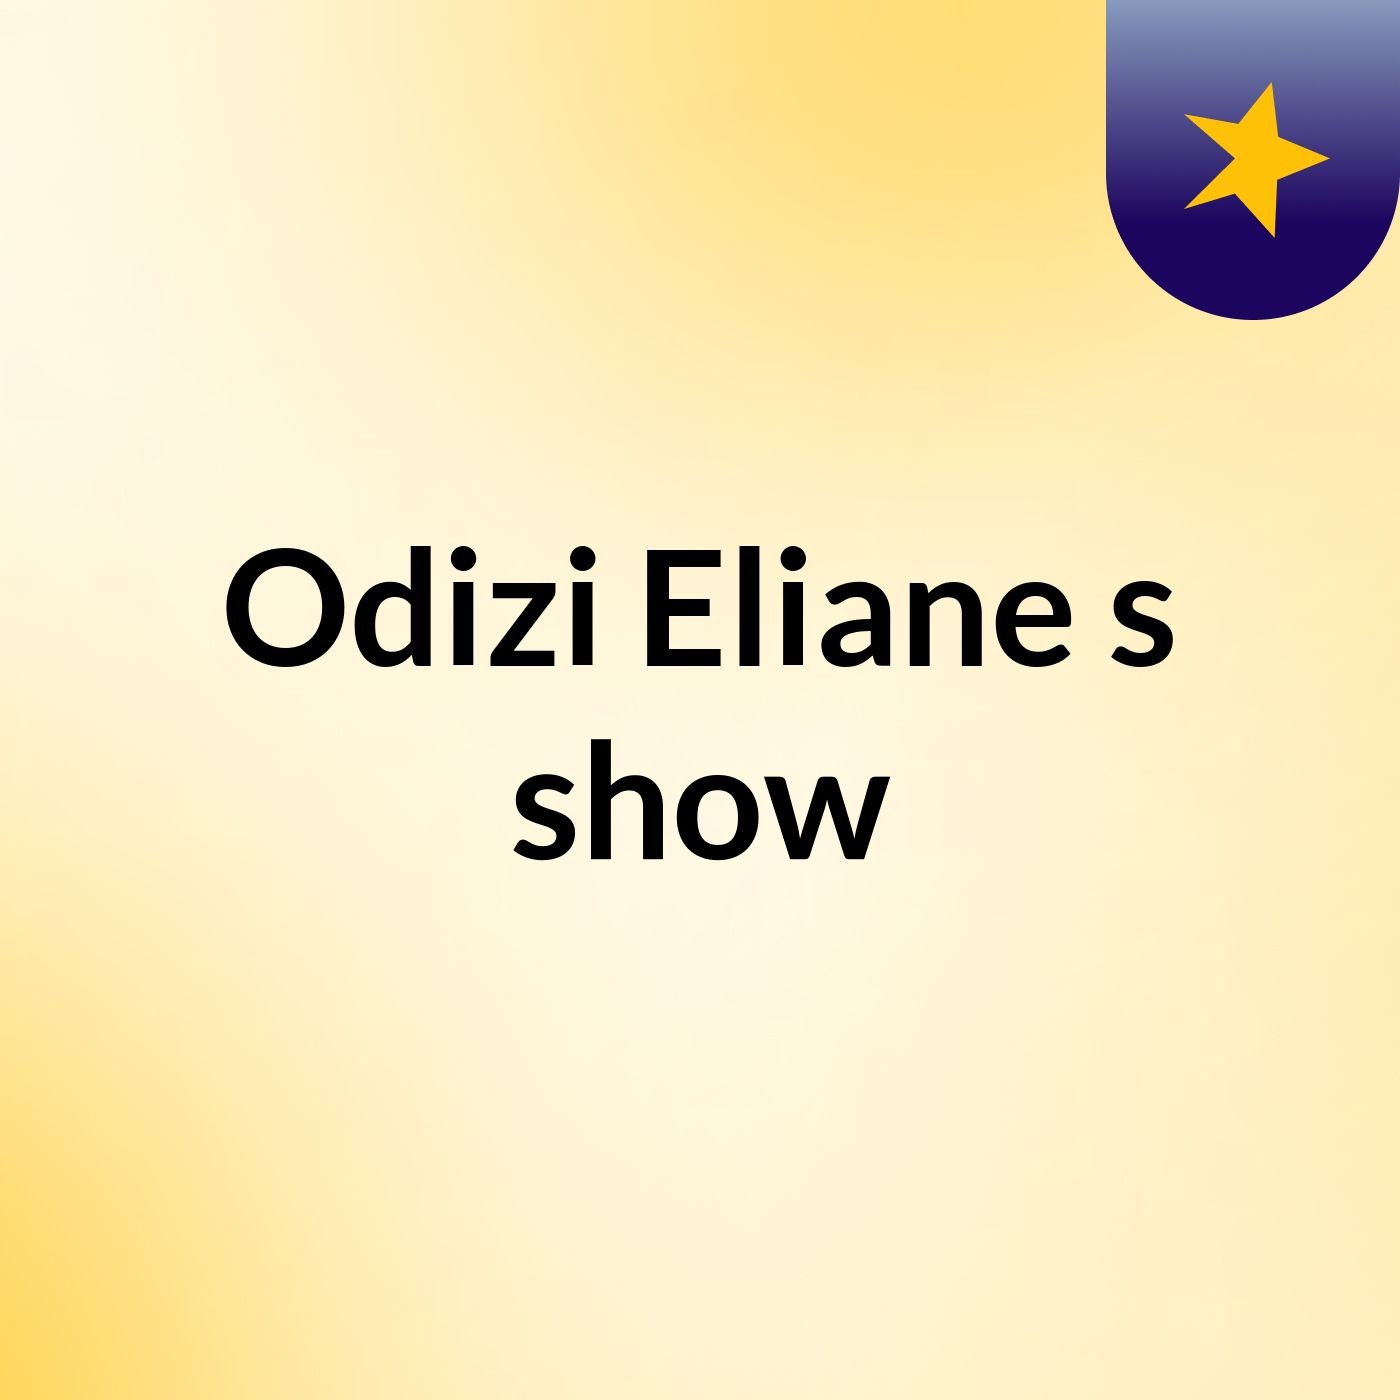 Odizi Eliane's show